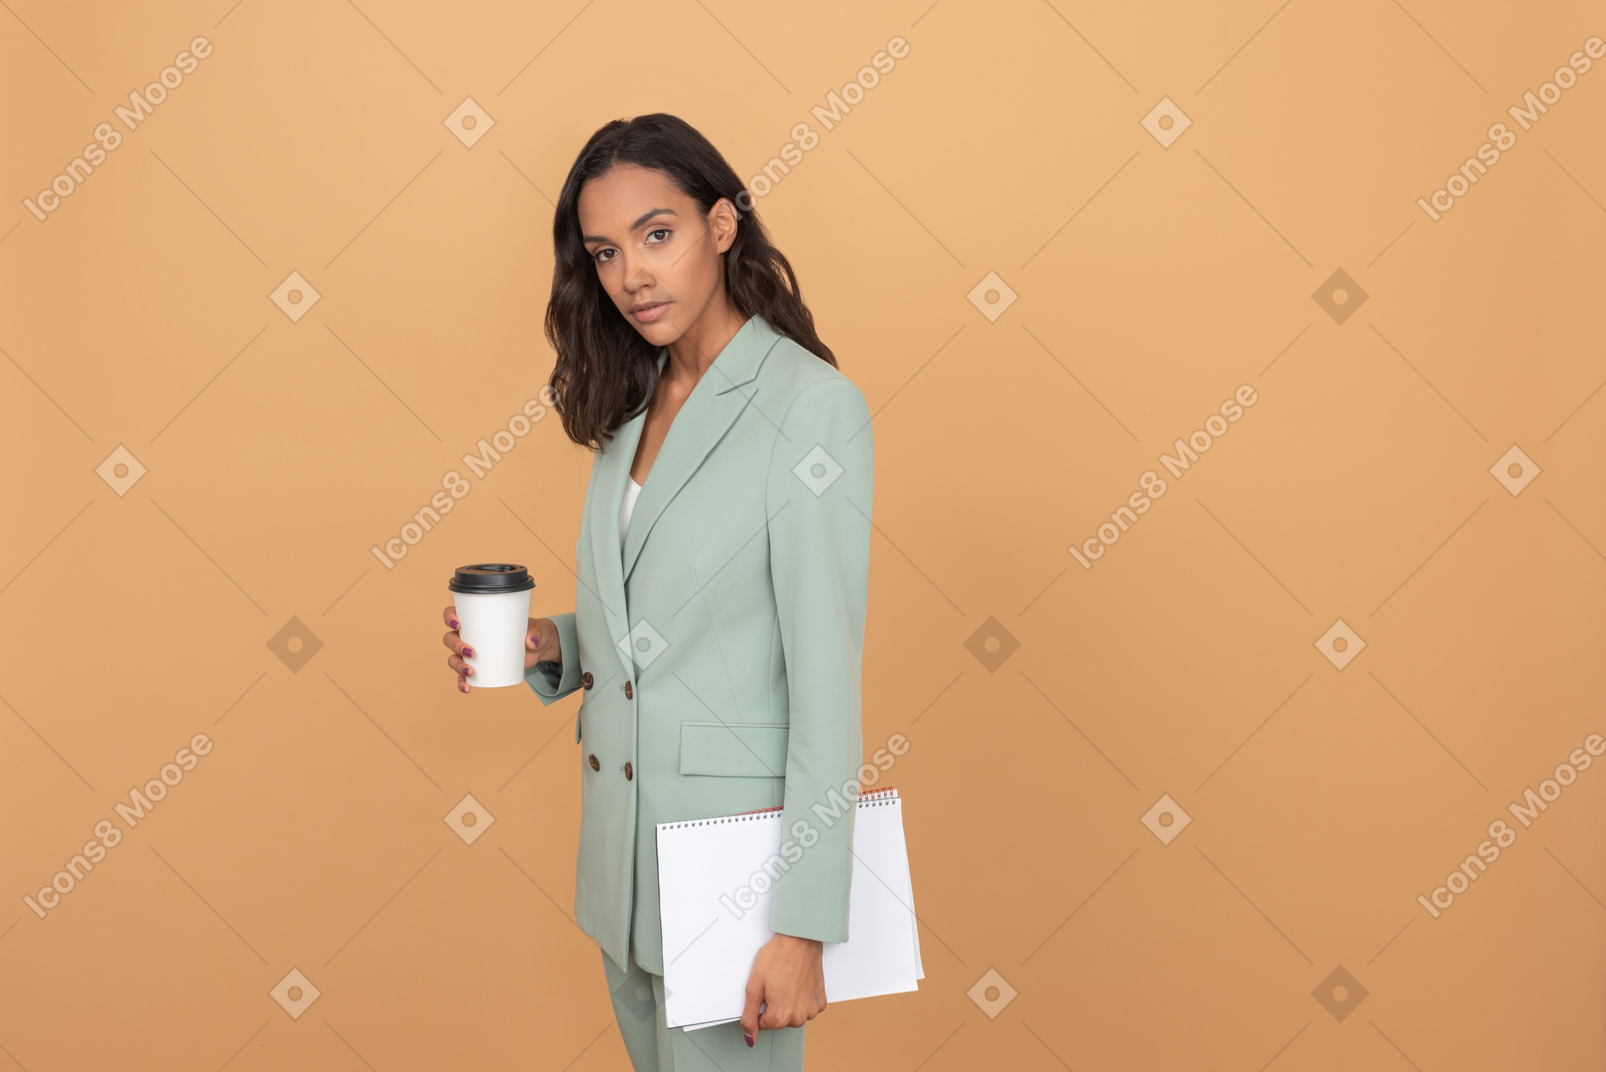 Attraktive junge frau, die einen kaffee und ein bündel papiere hält